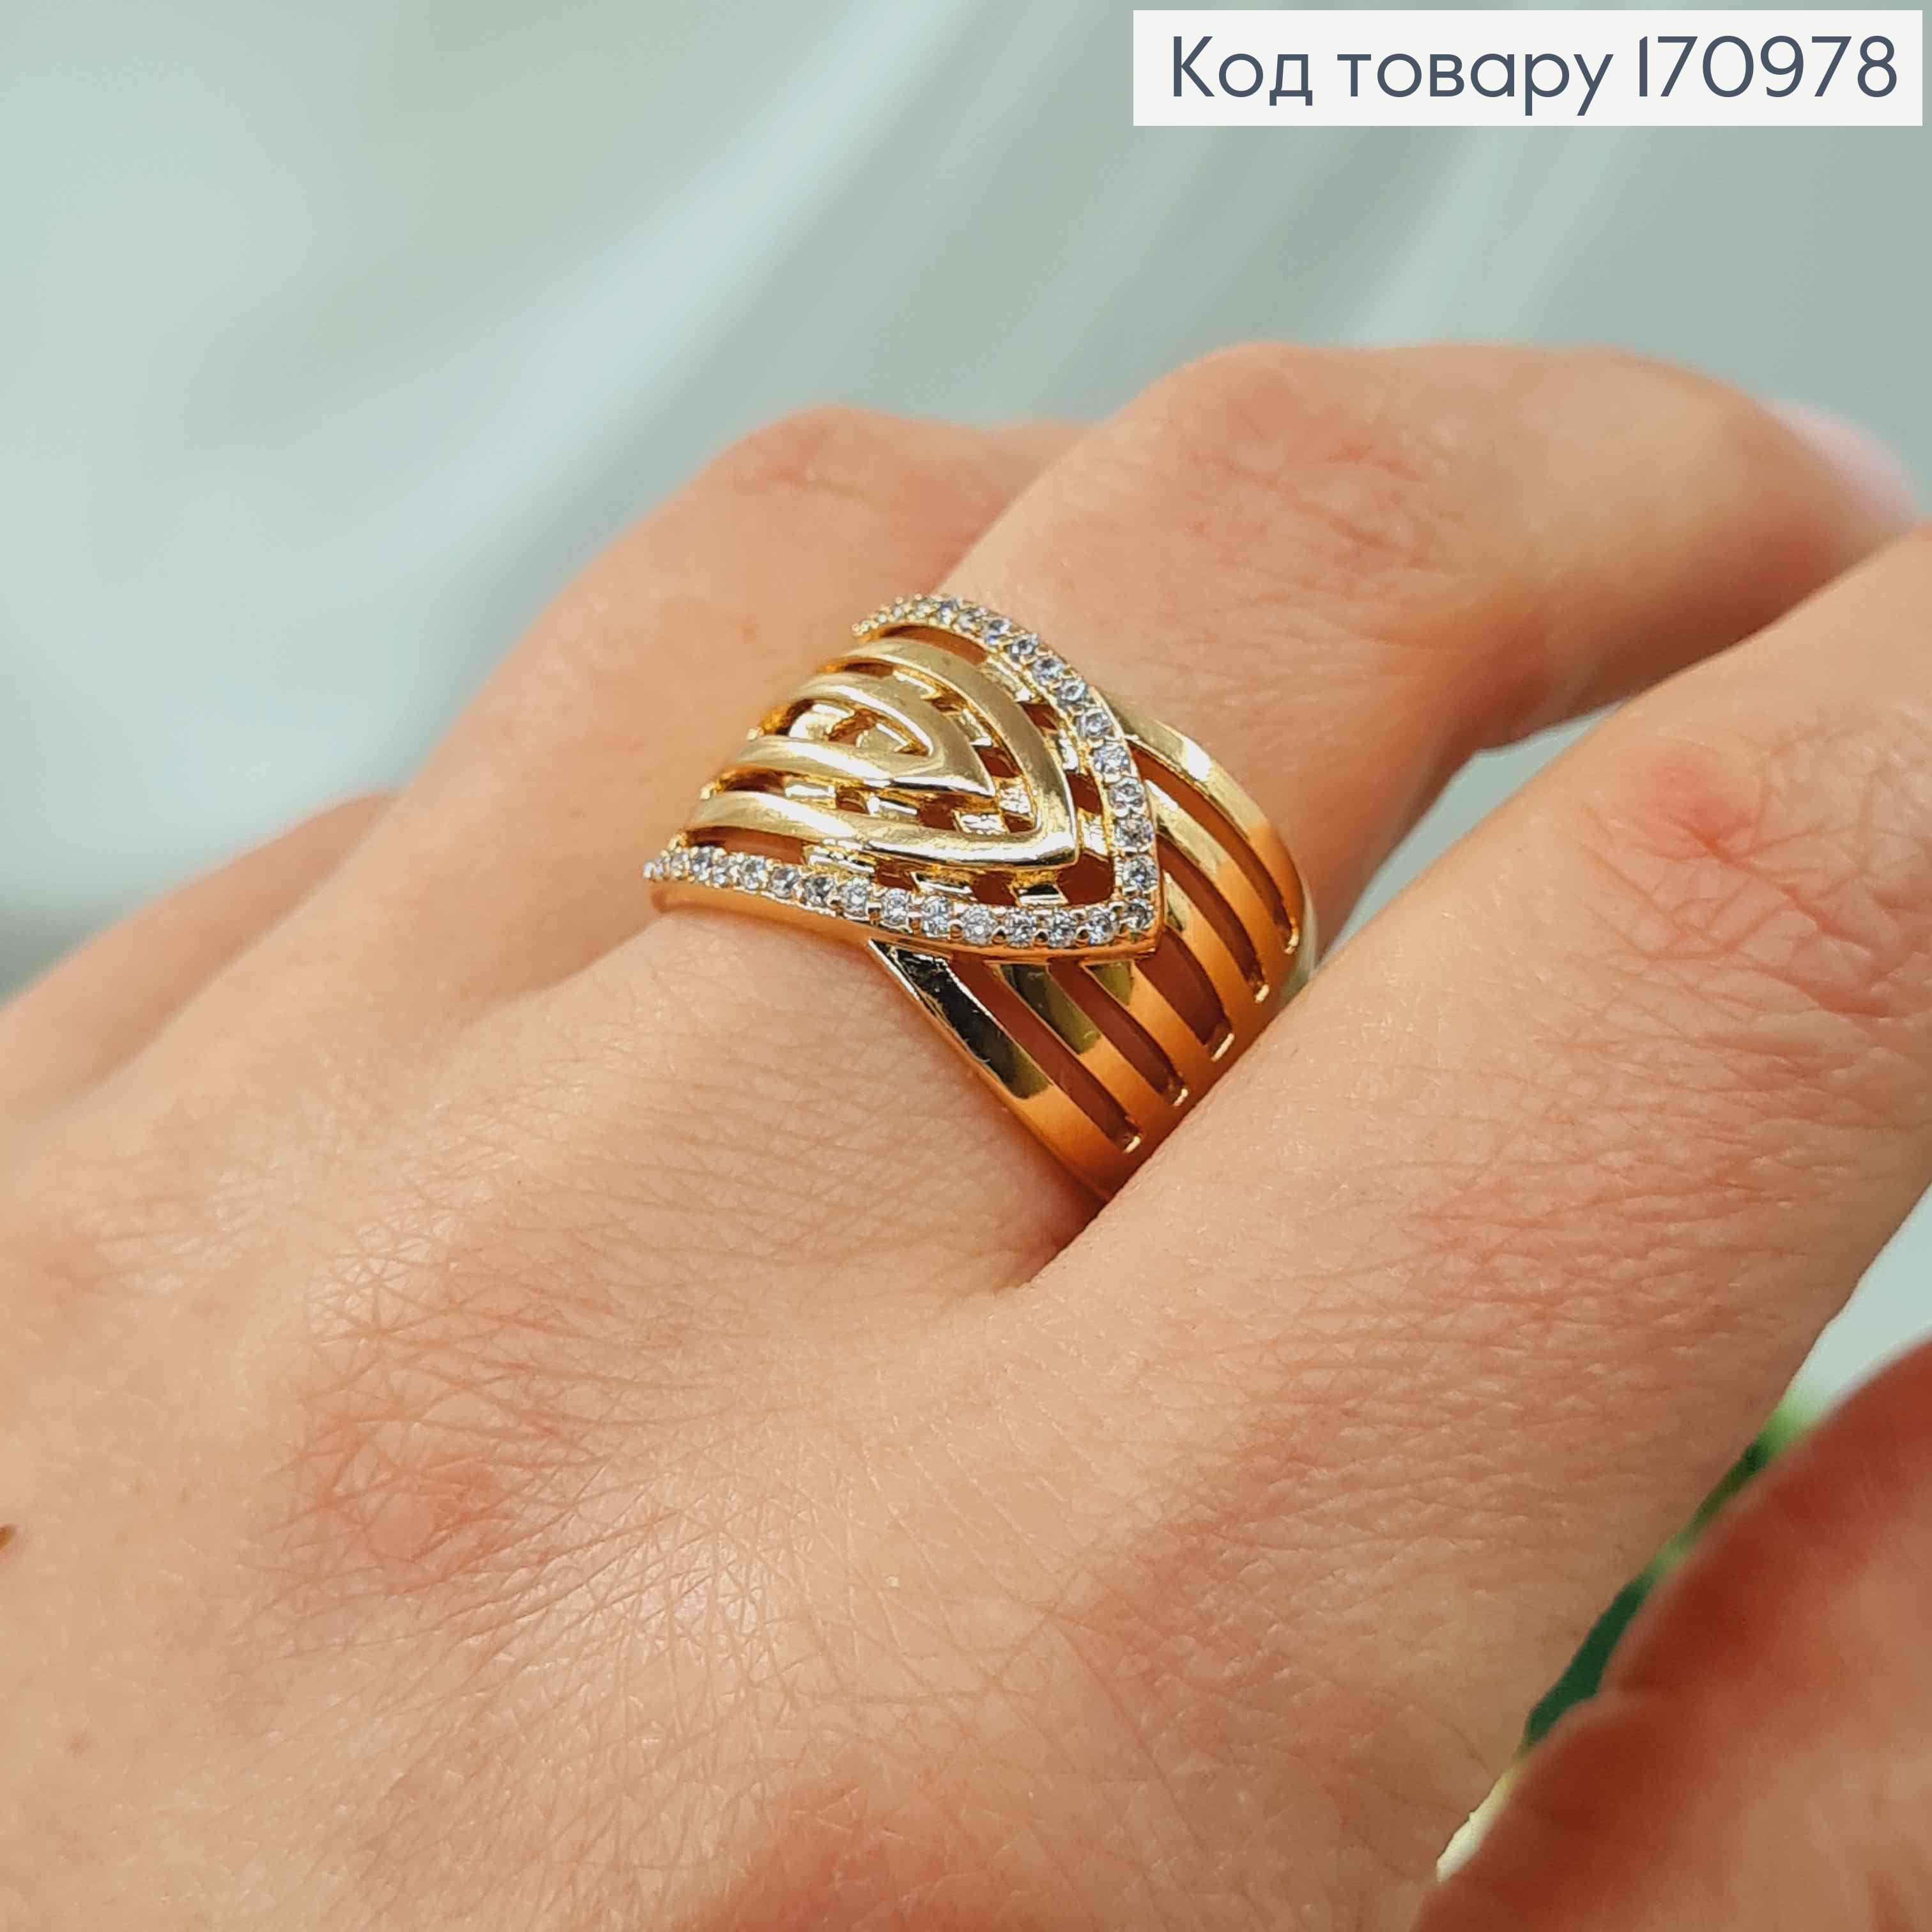 Кольцо широкое, со стрелочкой в камнях, с сечениями, Xuping 18K 170978 фото 2